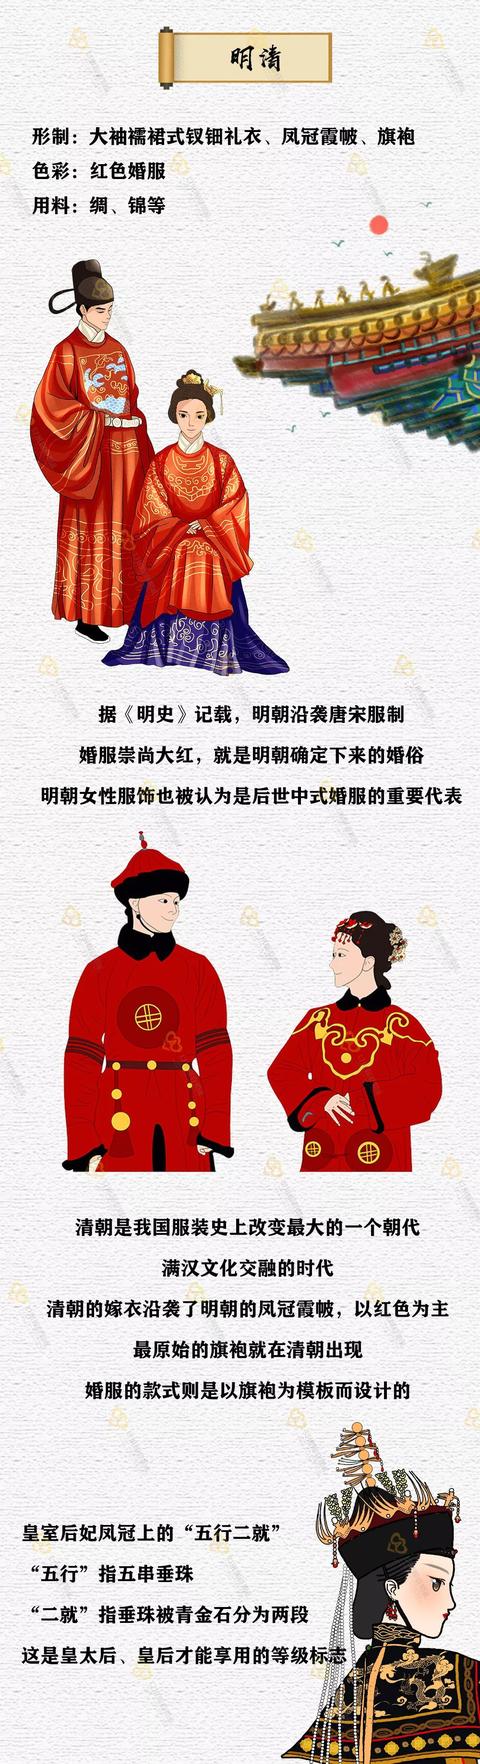 中国婚服变迁史红男绿女白色婚服在古代就流行过了